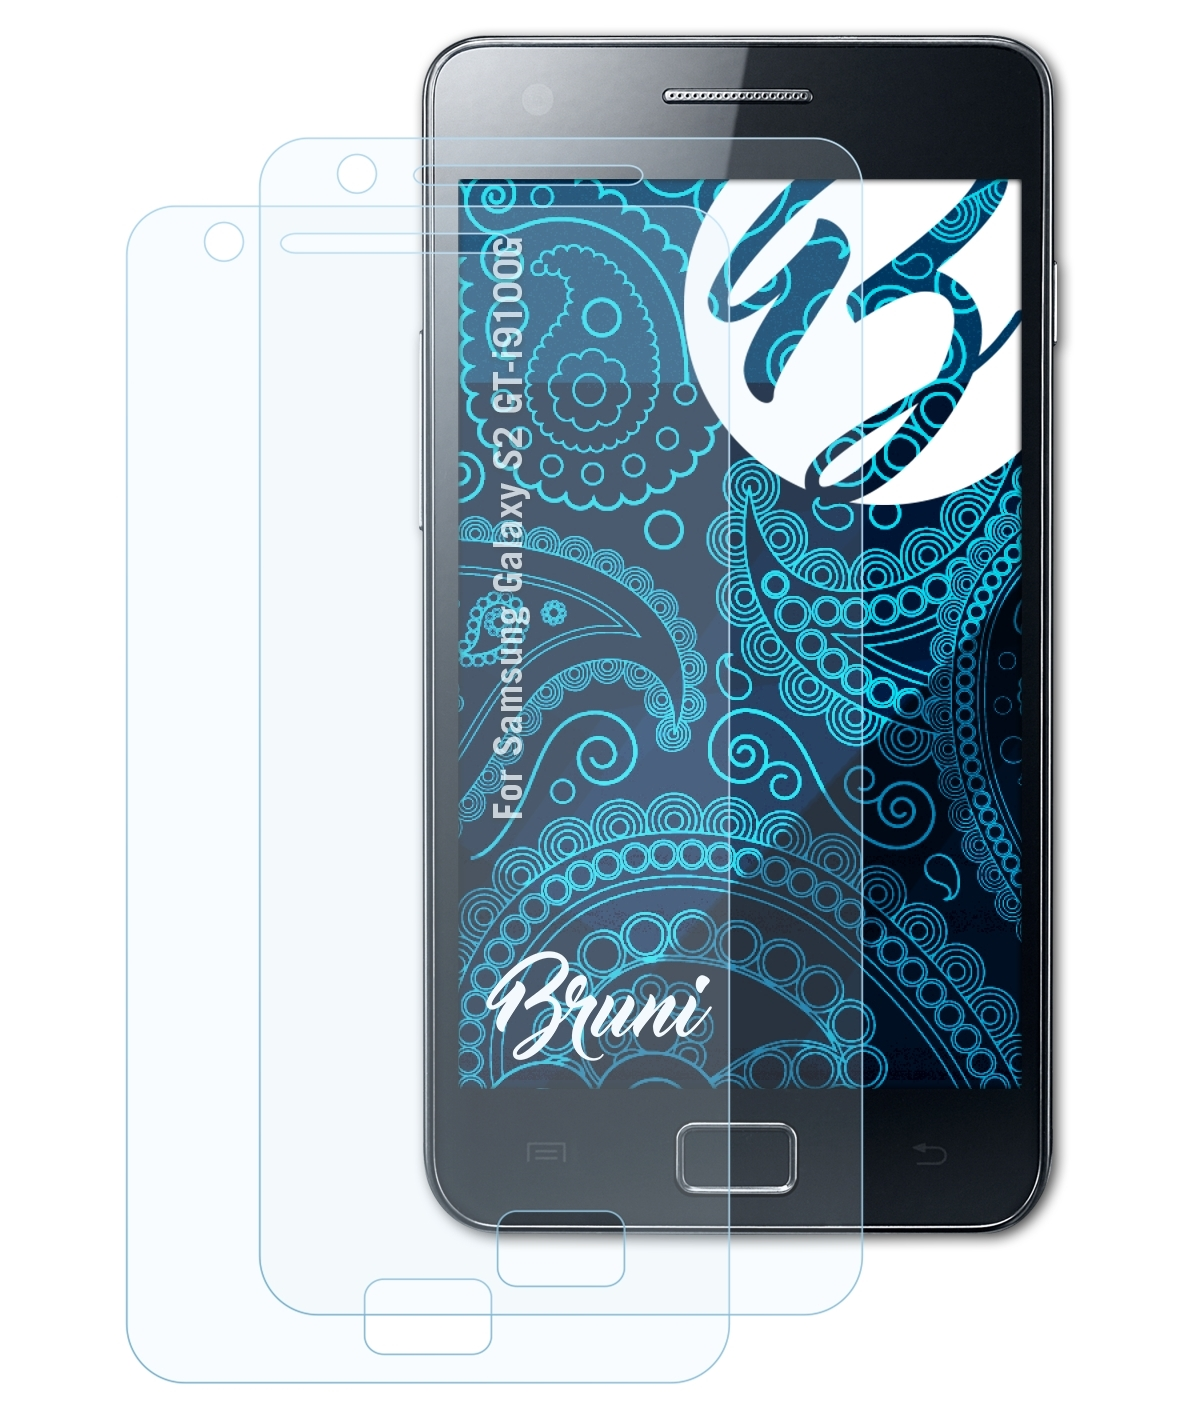 BRUNI 2x Basics-Clear Galaxy Schutzfolie(für S2 (GT-i9100G)) Samsung